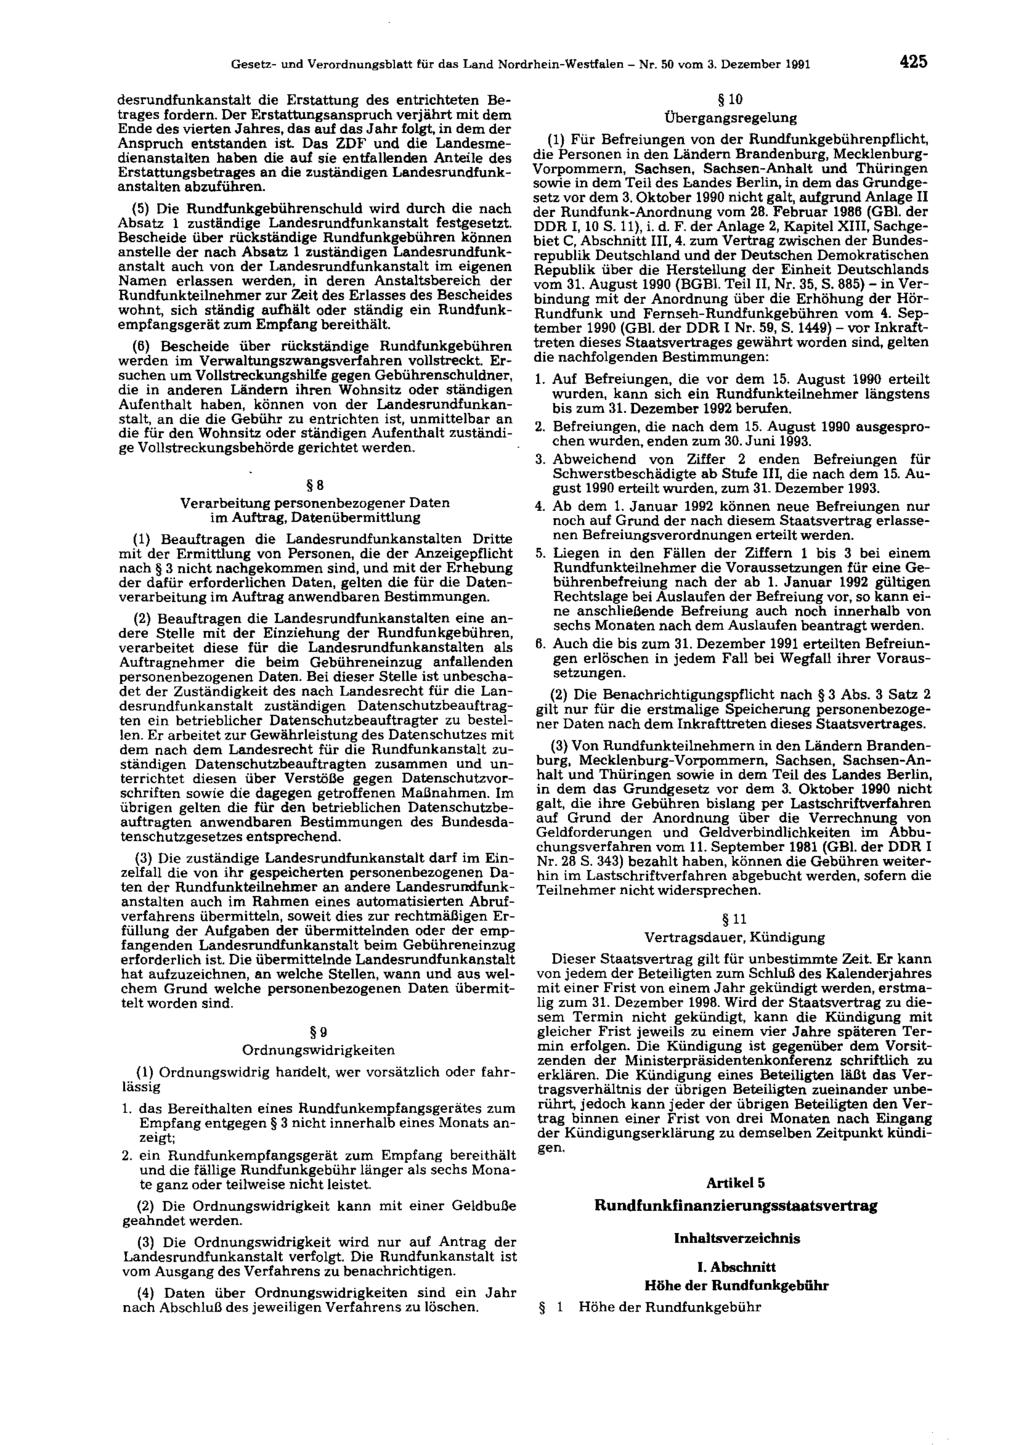 Gesetz- und Verordnungsblatt für das Land Nordrhein-Westfalen - Nr. 50 vom 3. Dezember 1991 425 desrundfunkanstalt die Erstattung des entrichteten Betrages fordern.